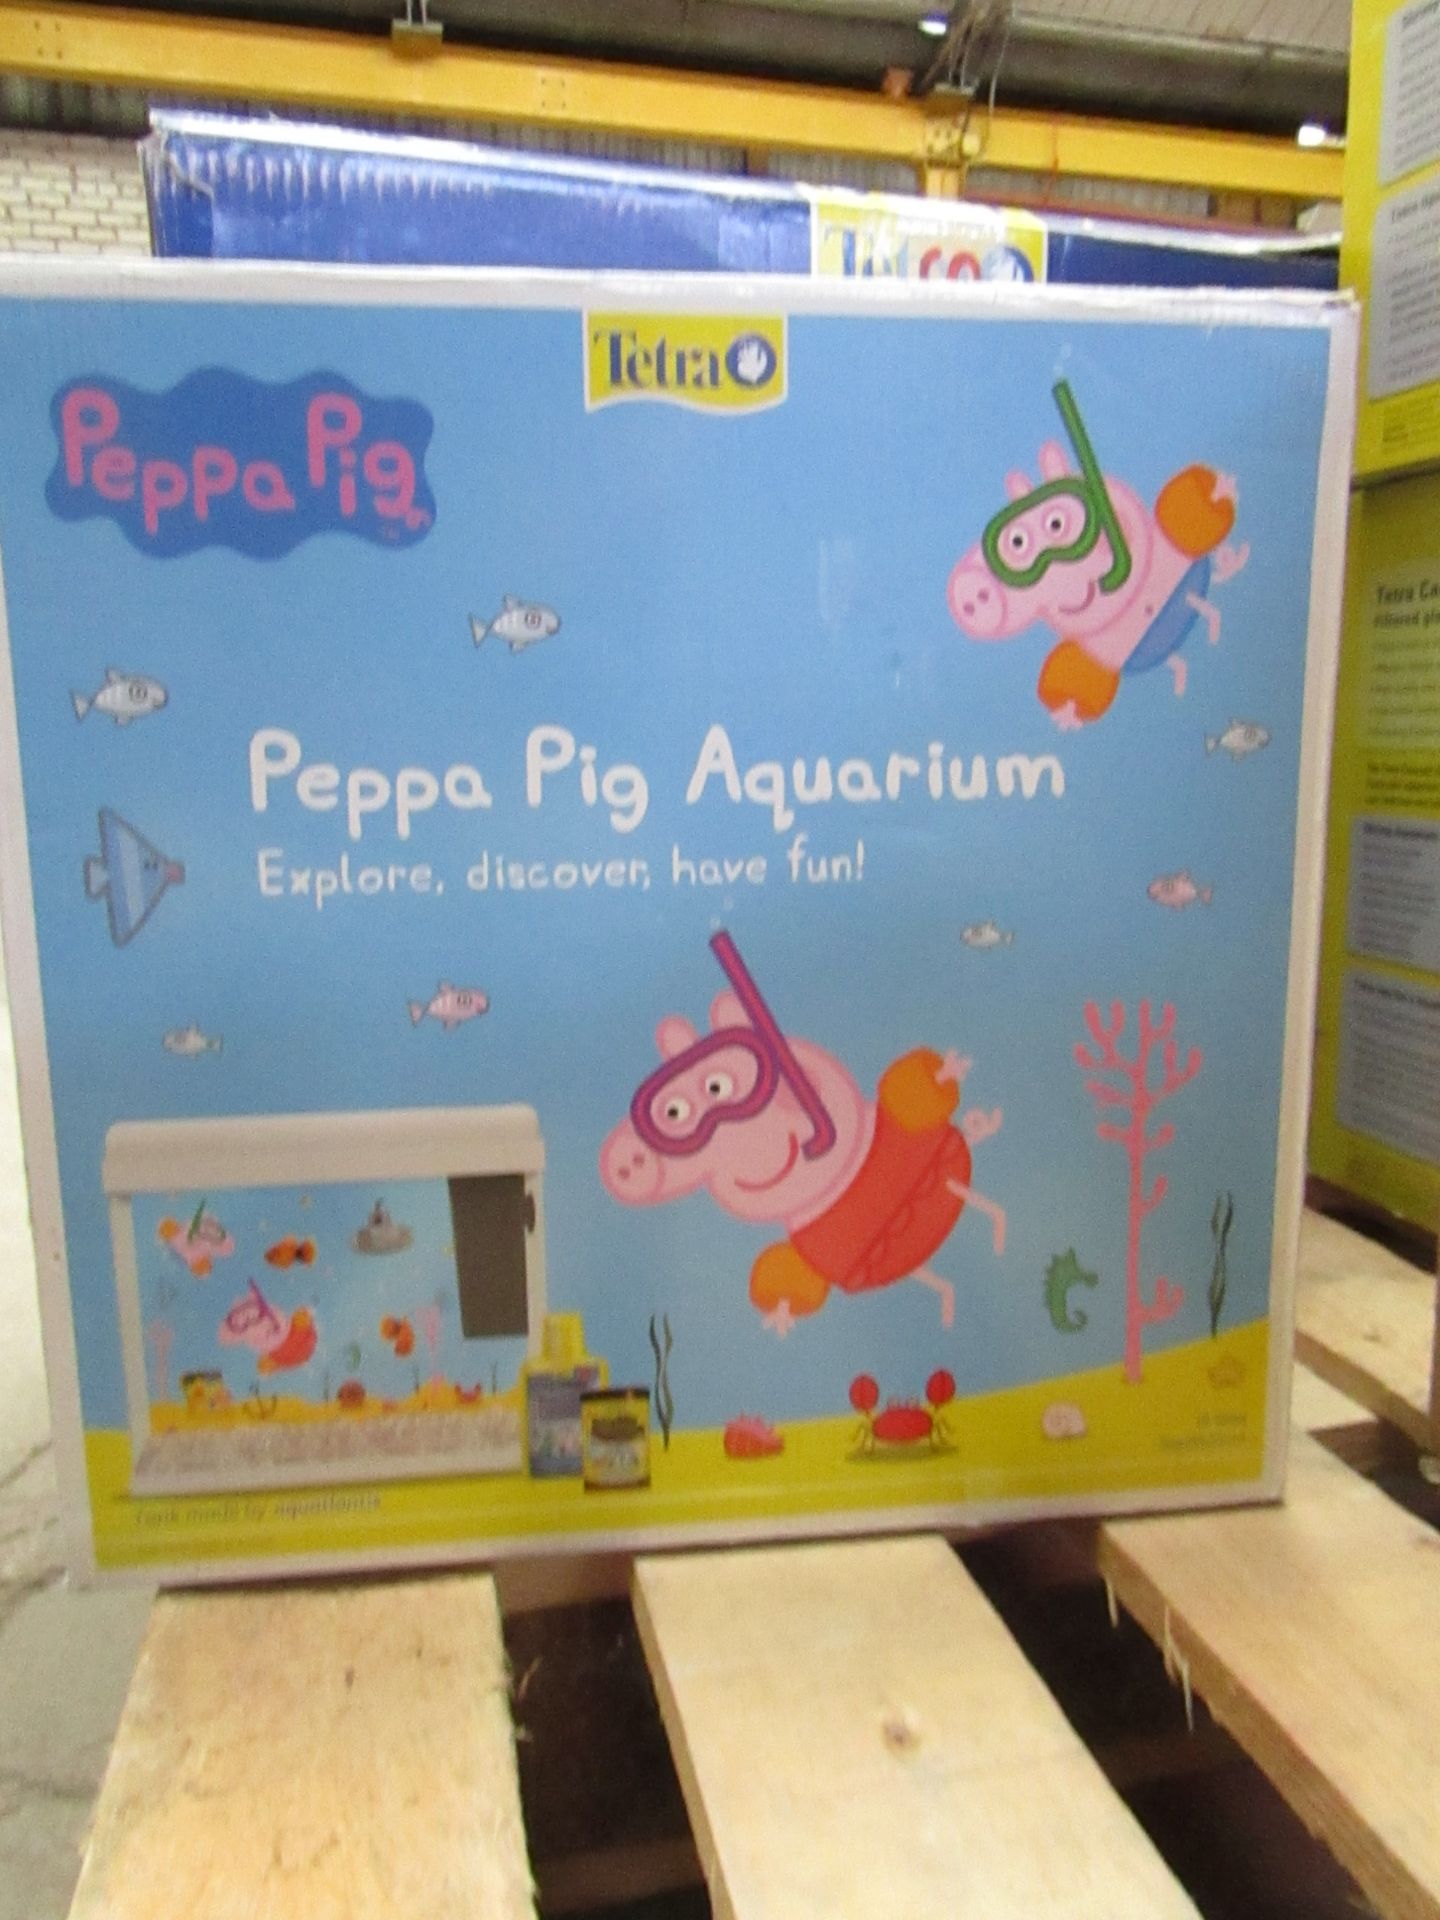 Tetra Peppa Pig Aquarium set, boxed comes with back drop sheet, filter nad gravel